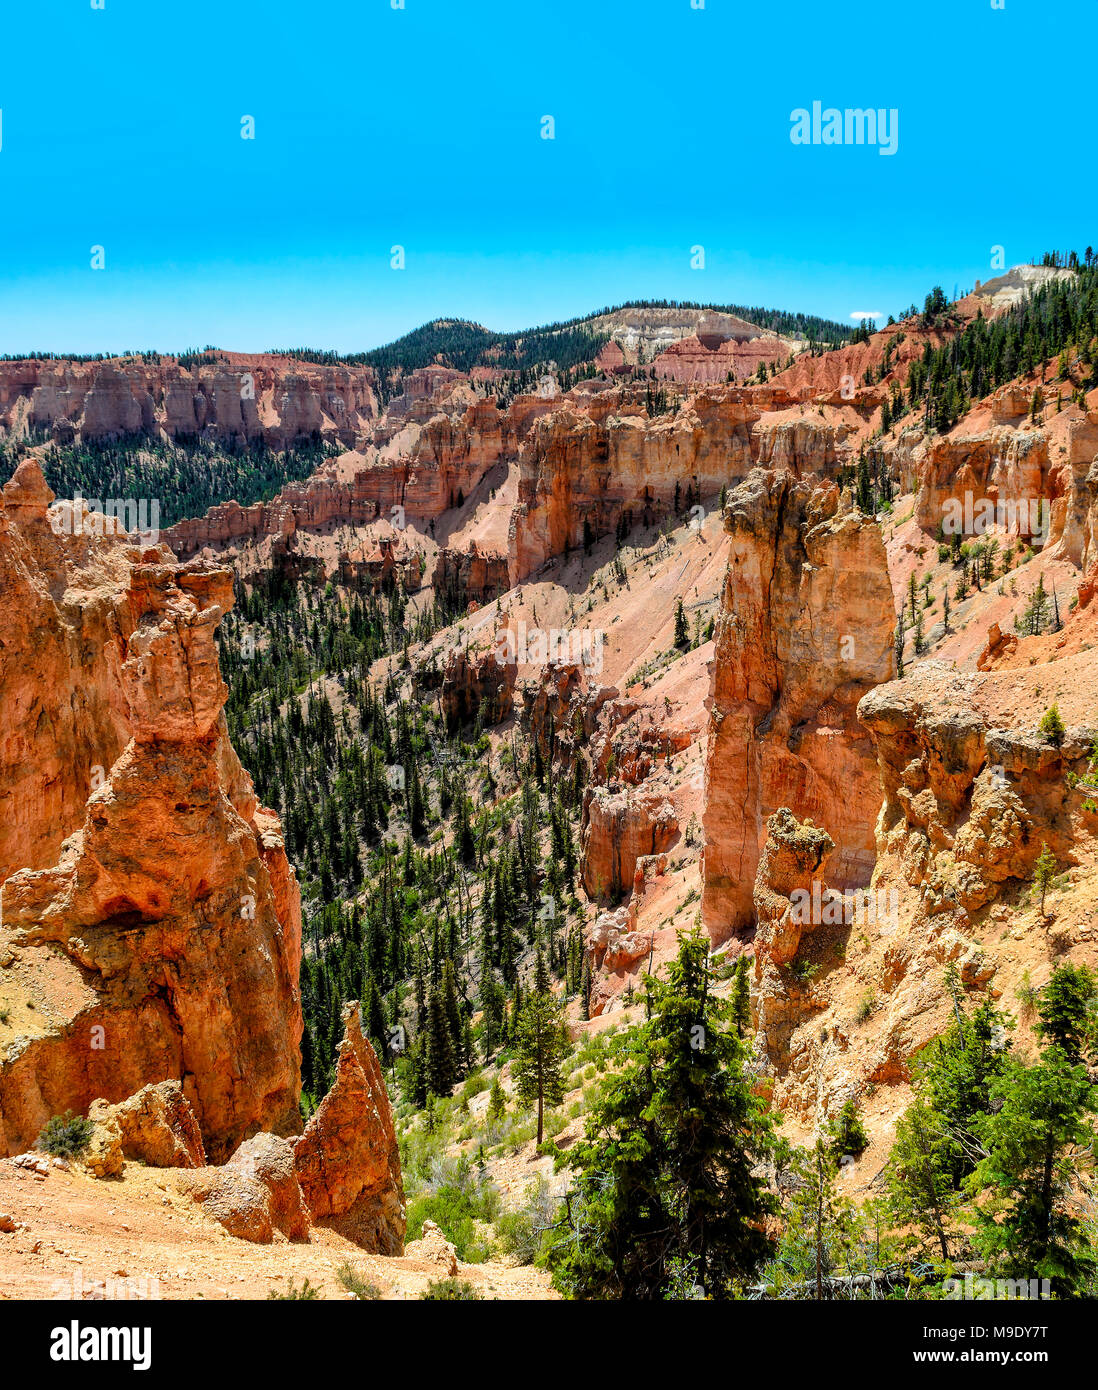 Vista panoramica del rosso-arancione pareti rocciose ripide colline e scogliere che portano nella verde valle di seguito con alberi verdi e un luminoso cielo blu chiaro. Foto Stock